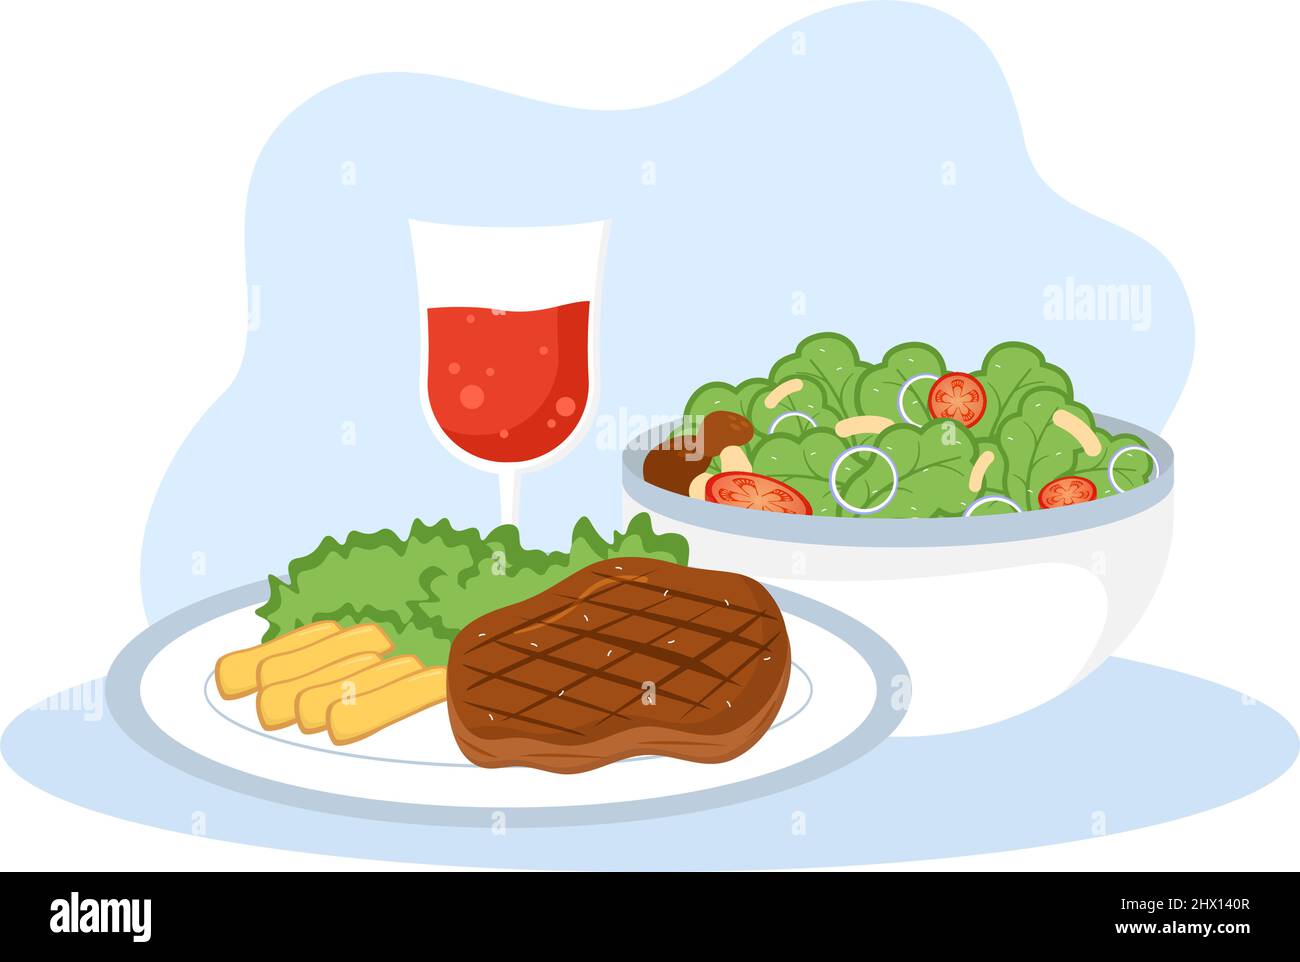 Essen zu jeder Mahlzeit mit gesundheitlichen Vorteilen, ausgewogene Ernährung, Vegan, Nutritional und das Essen sollte jeden Tag in Flat Background Illustration gegessen werden Stock Vektor